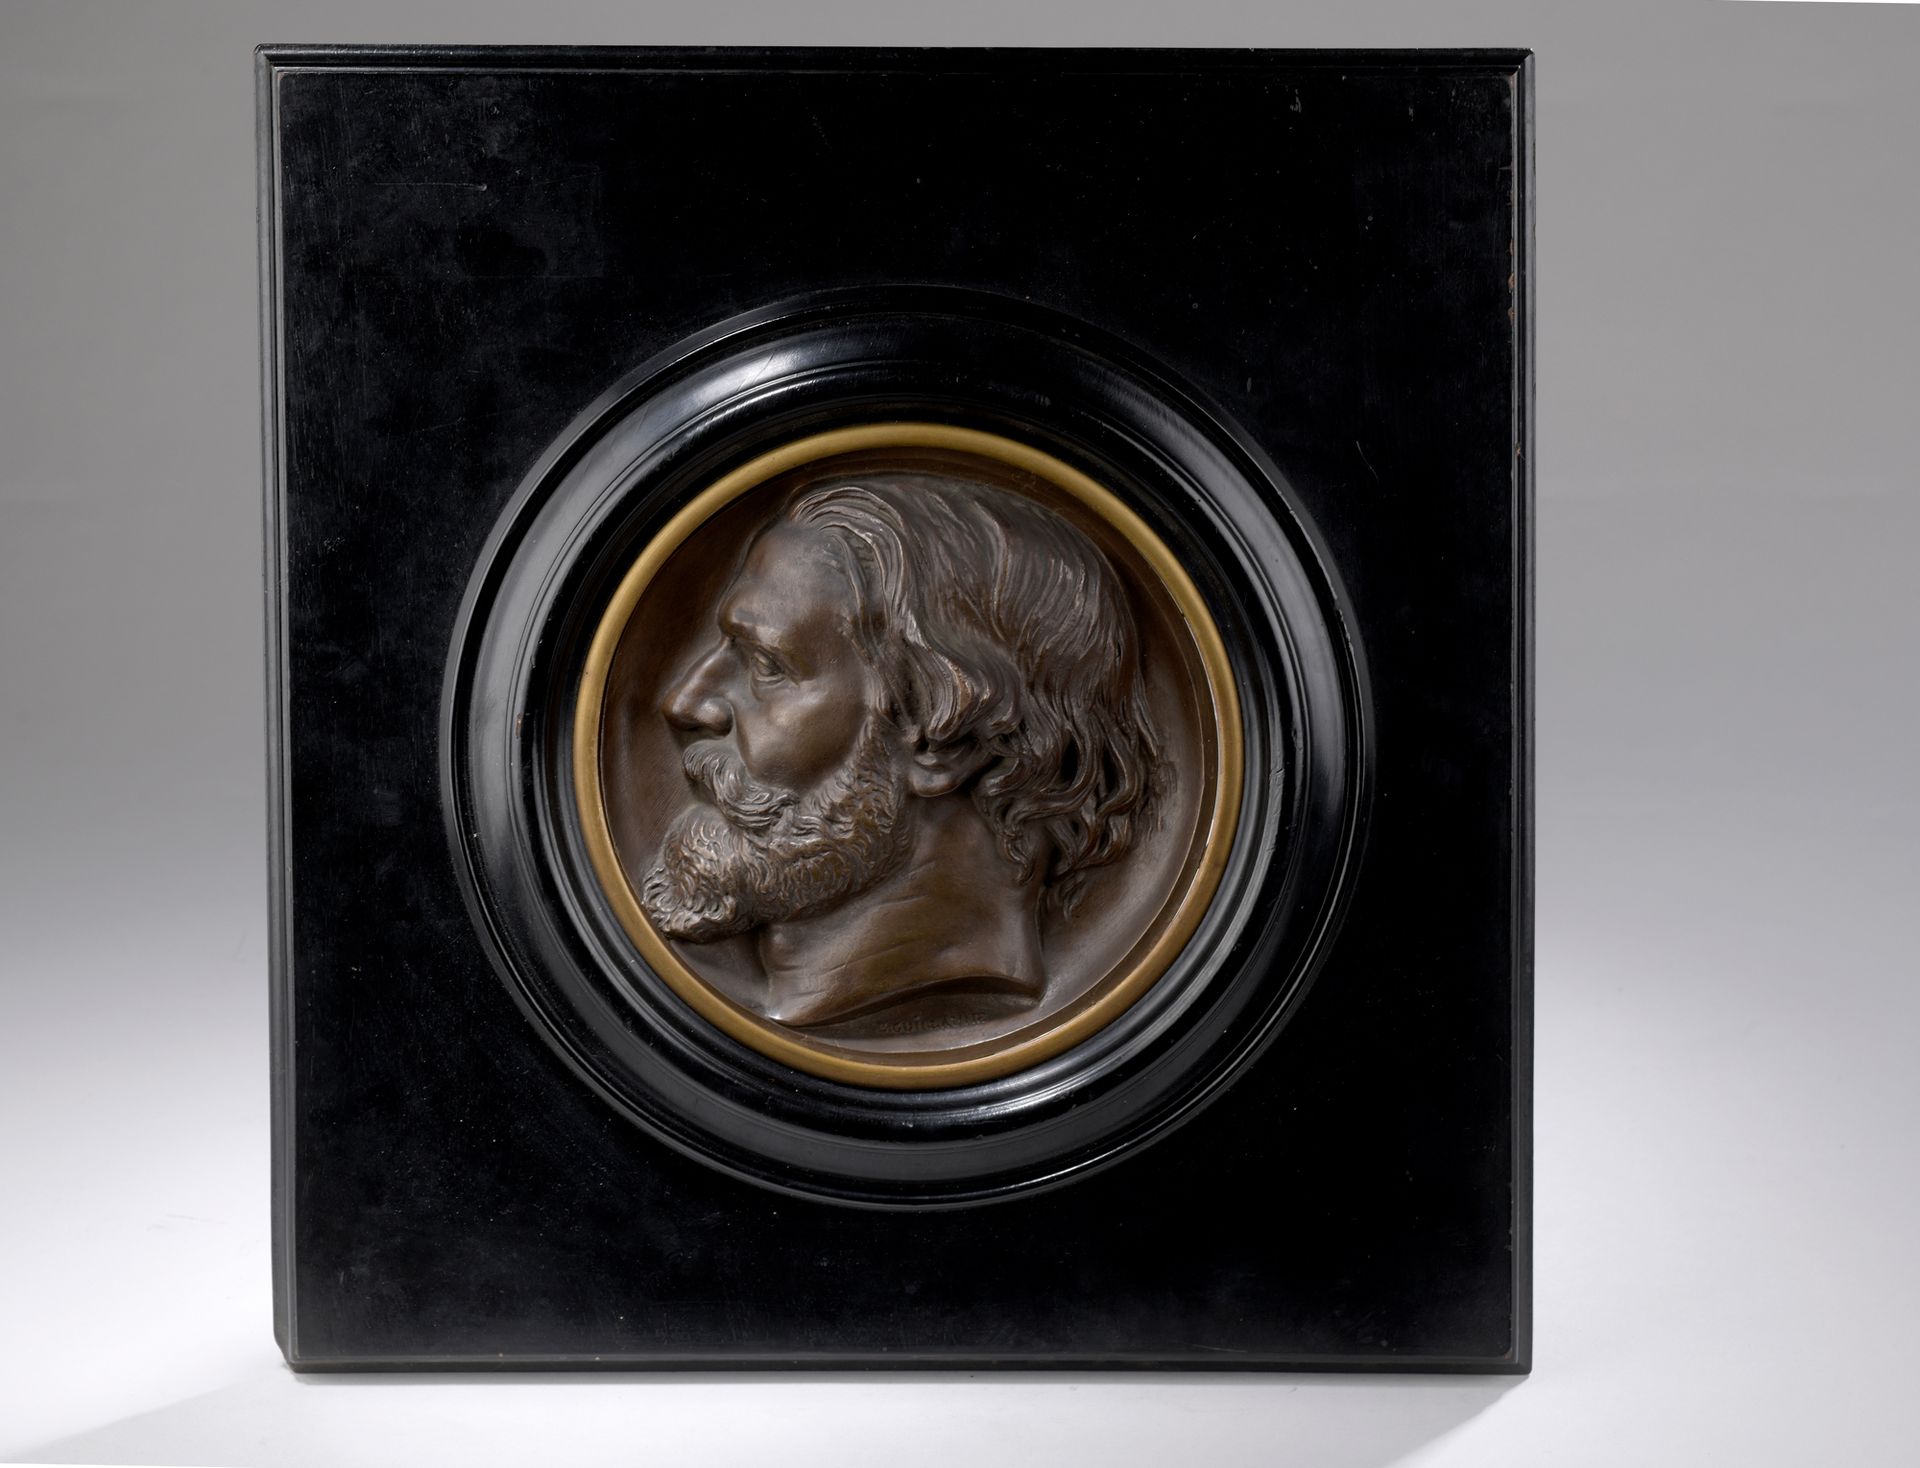 Null 欧仁-纪尧姆 (1822-1905)

建筑师亚历克西斯-帕卡德（1817-1867）的画像

带有棕色铜锈的青铜奖章

颈部下方有 "E. GUIL&hellip;